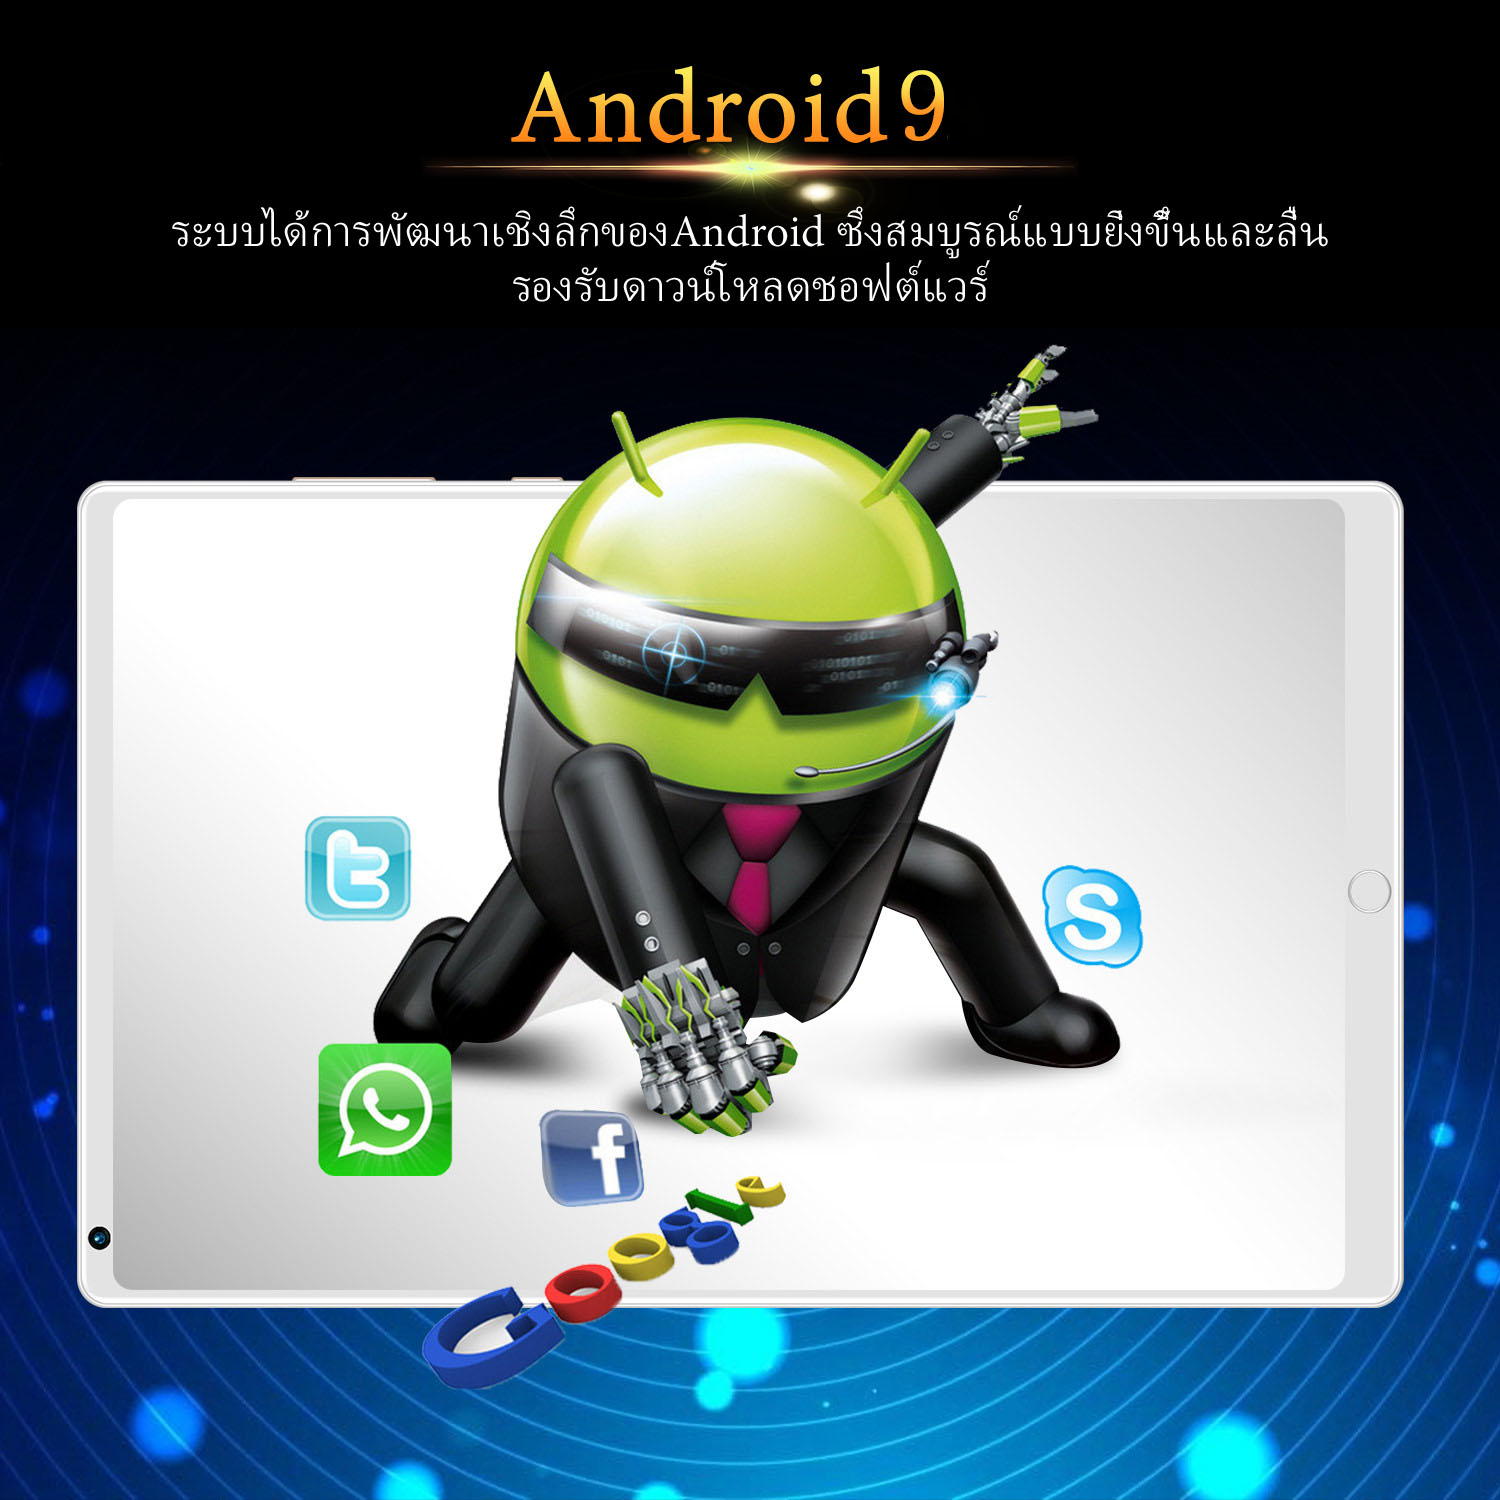 ภาพที่ให้รายละเอียดเกี่ยวกับ Tablet realme Pad MINI แท็บเล็ต RAM12G ROM512G 10.1นิ้ว โทรได้ แท็บเล็ตถูกๆ แท็บเล็ตราคาถูก Andorid 10.0 Tablet จัดส่งฟรี รองรับภาษาไทย หน่วยประมวลผล 10-core แท็บเล็ตโทรได้ แท็บเล็ตสำหรับเล่นเกมราคาถูก แท็บเล็ตราคาถูกๆ แท็บเล็ตราคาถูกรุ่นล่าสุด ไอเเพ็ด